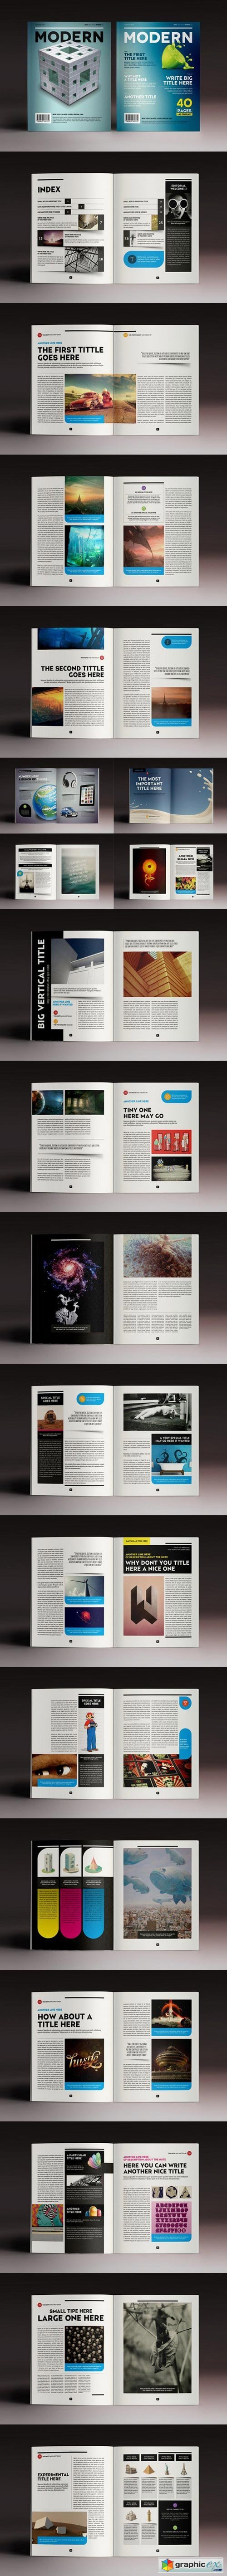 Design Magazine 5